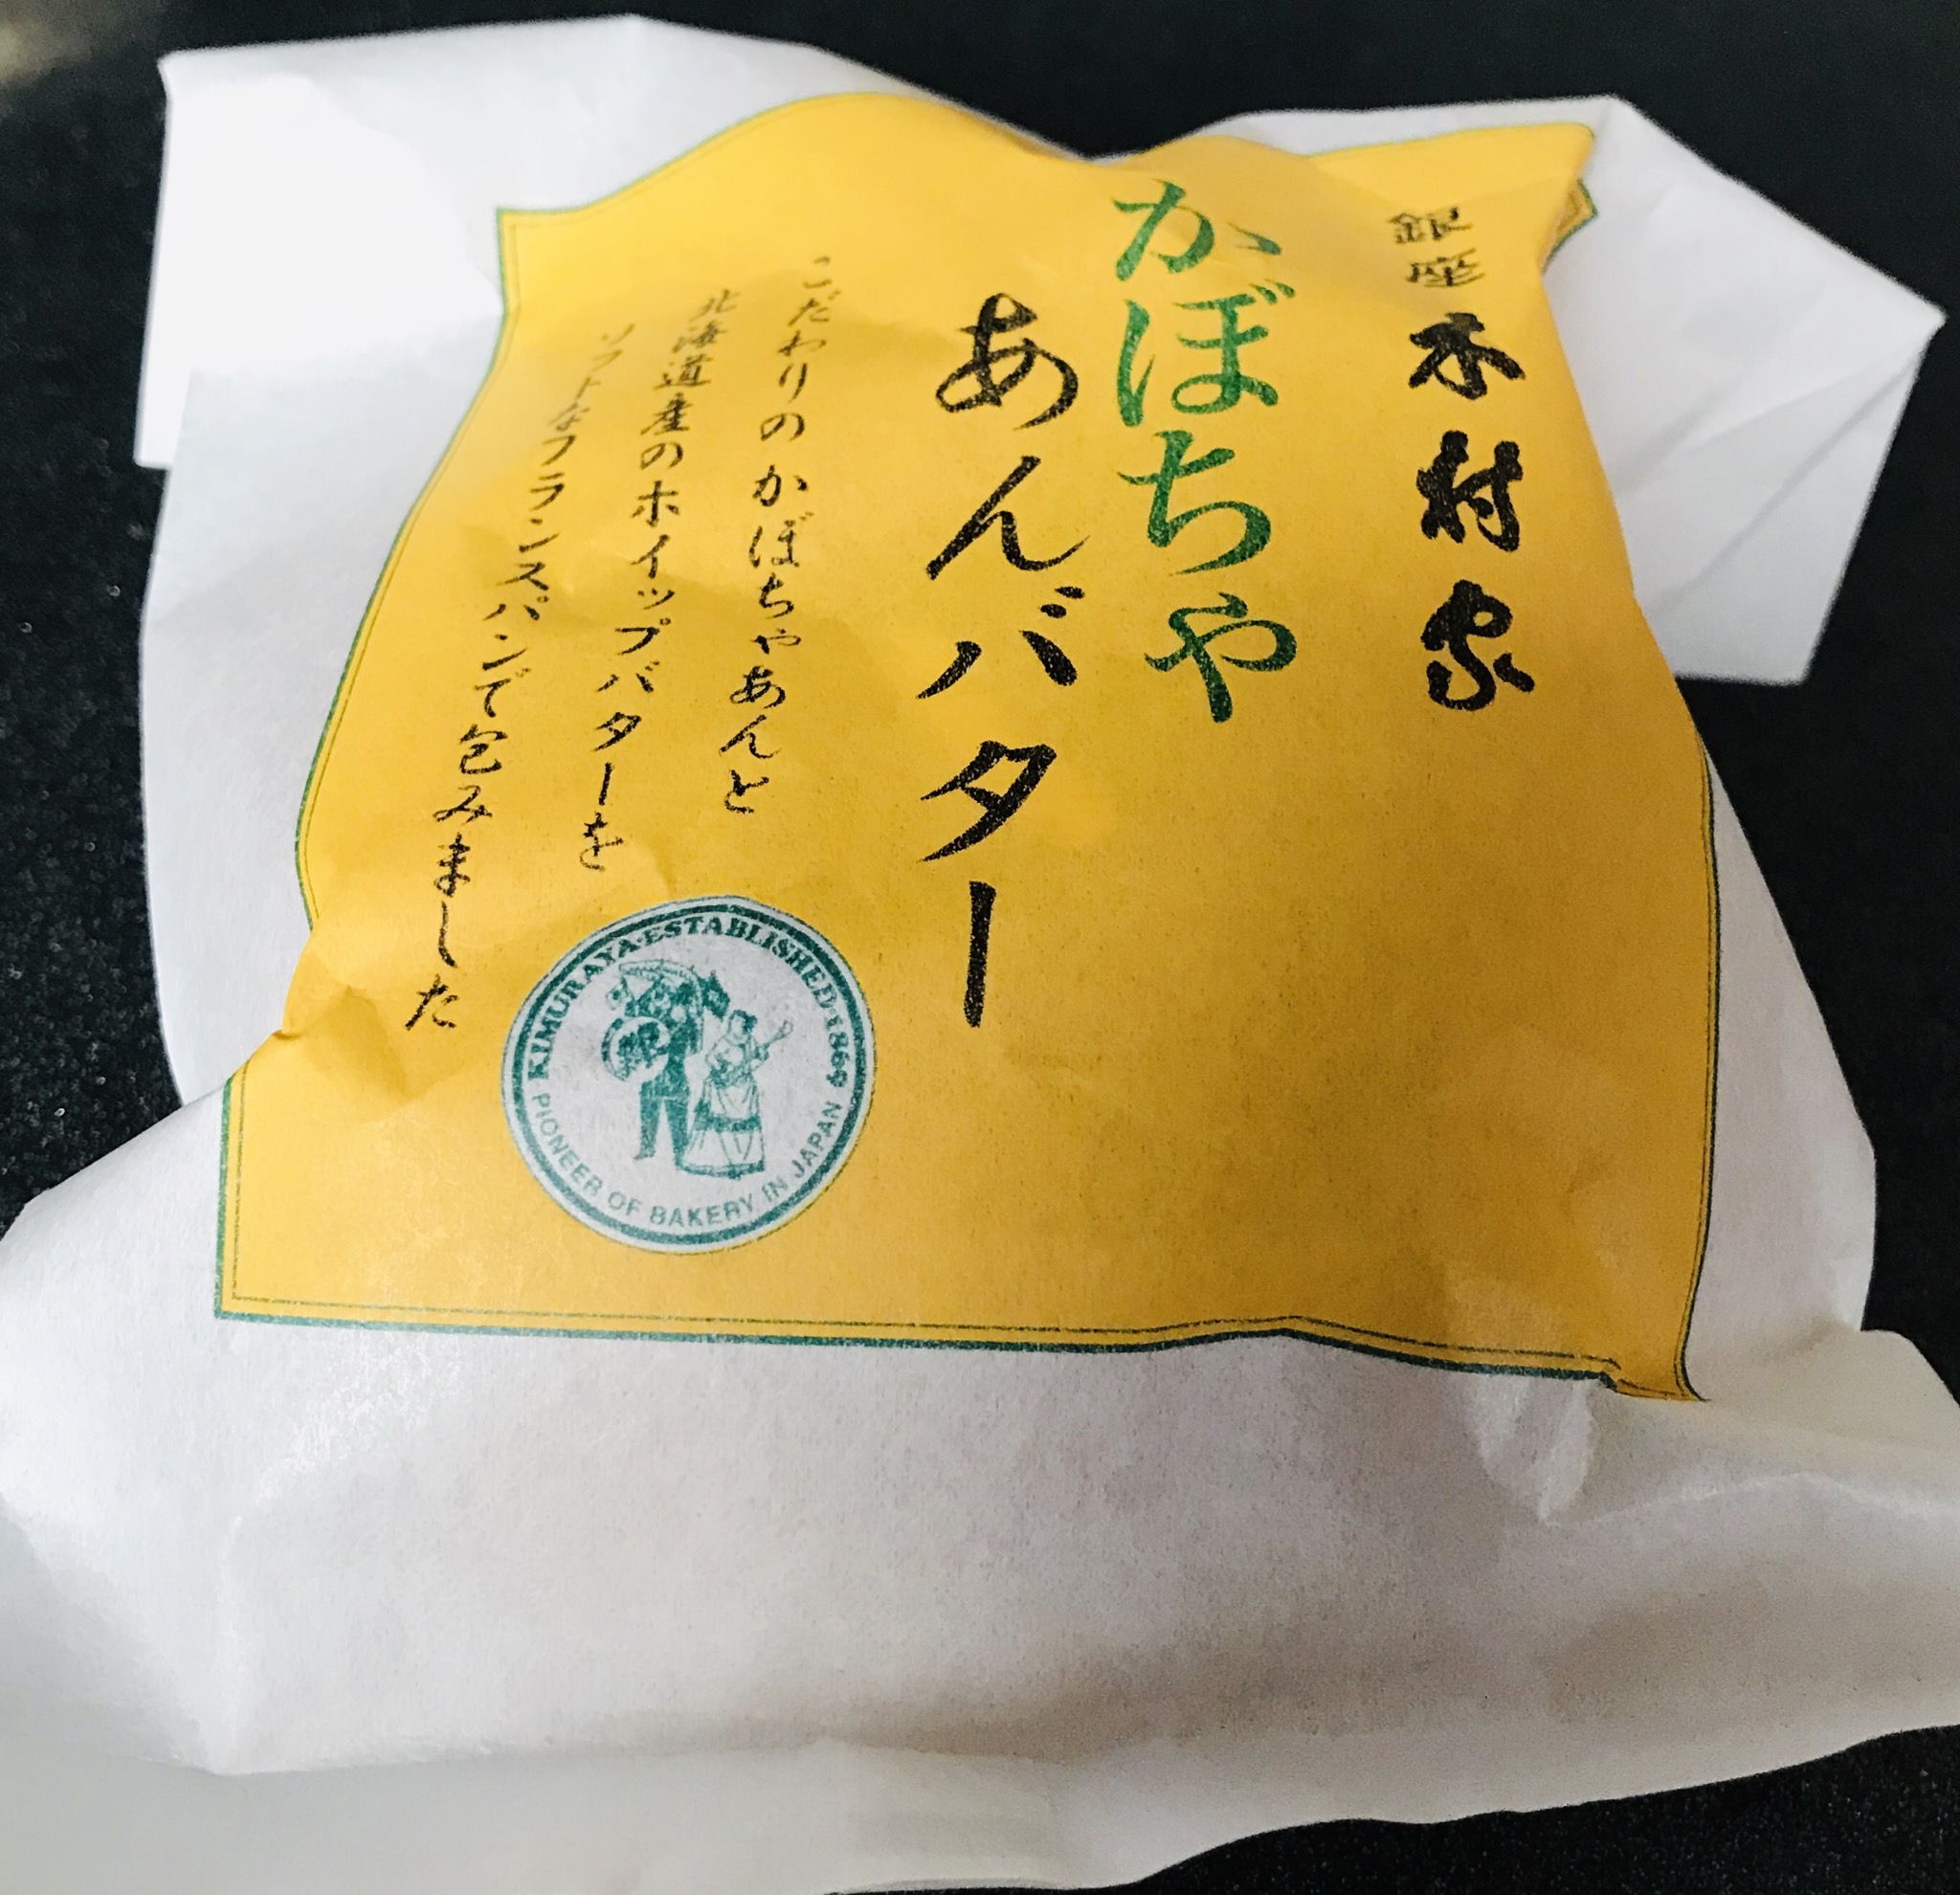 木村屋のかぼちゃあんバターは忘れられない味と満足感 季節限定のあんパンを食レポ Small 背が低いからこそオシャレになれるブログ